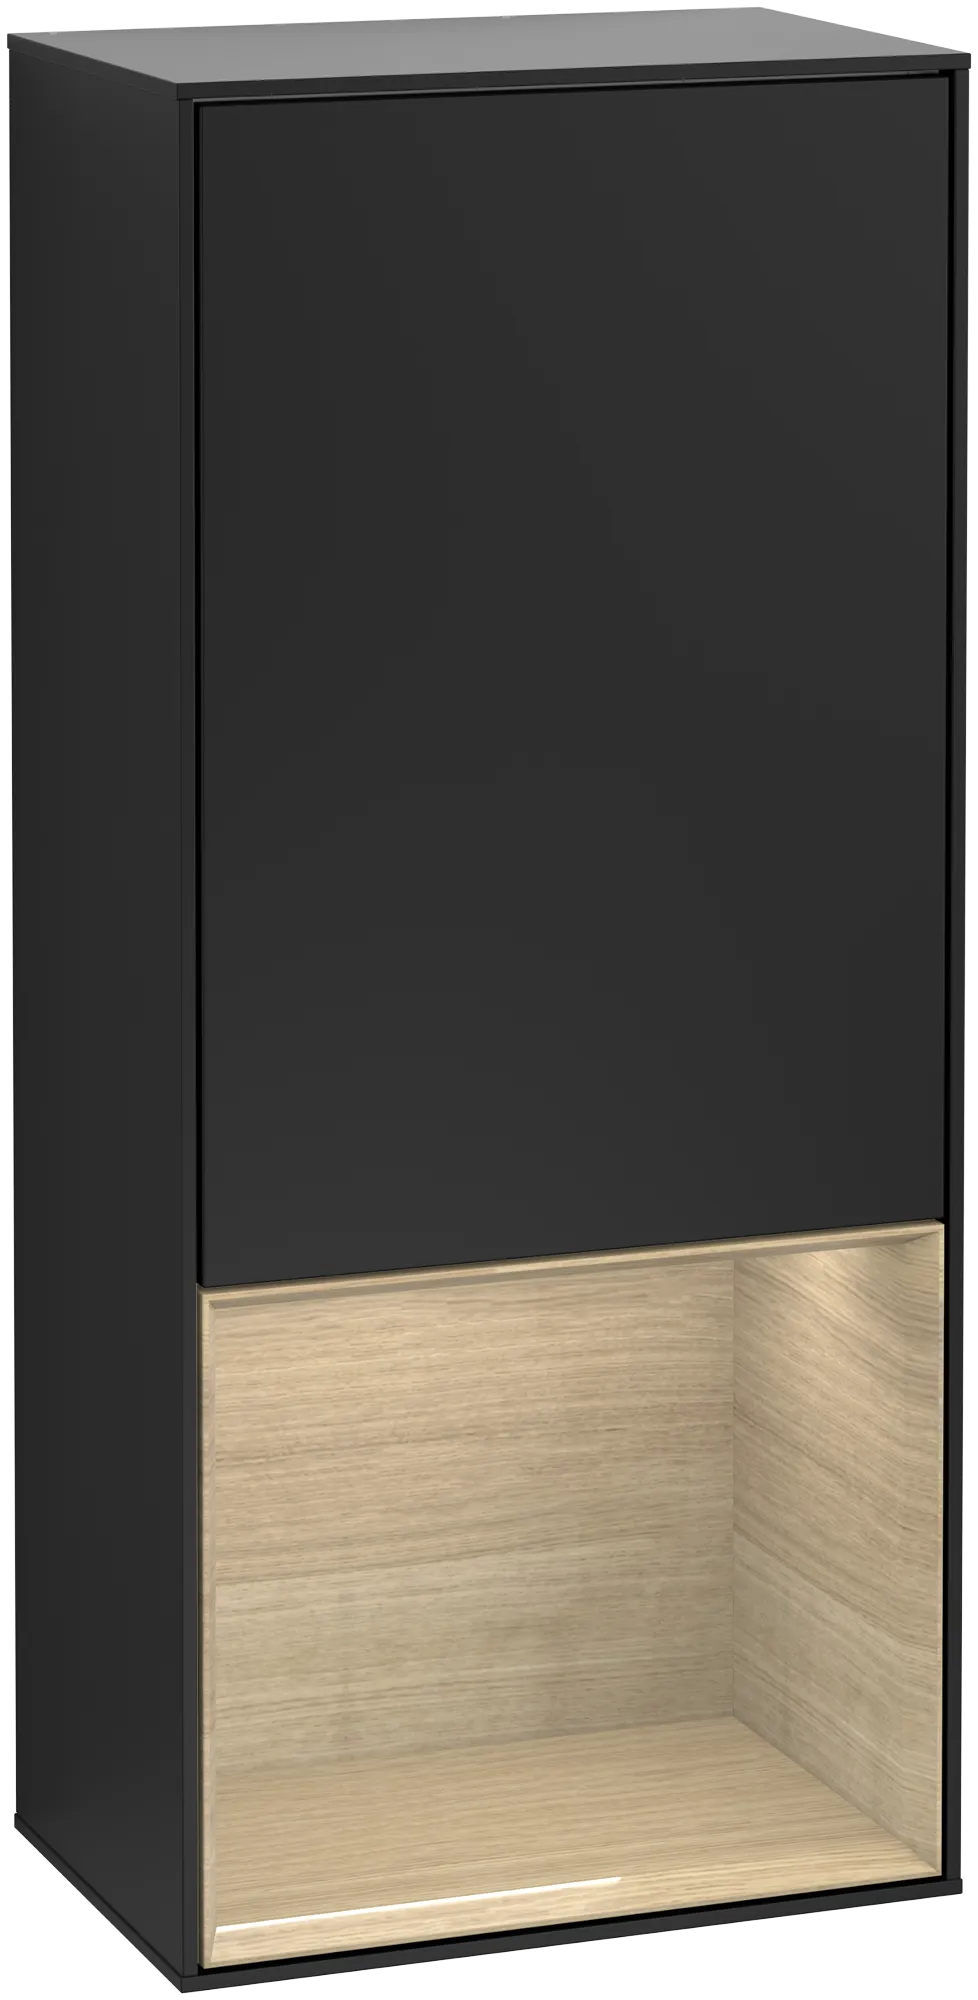 Bild von VILLEROY BOCH Finion Seitenschrank, mit Beleuchtung, 1 Tür, 418 x 936 x 270 mm, Black Matt Lacquer / Oak Veneer #G540PCPD